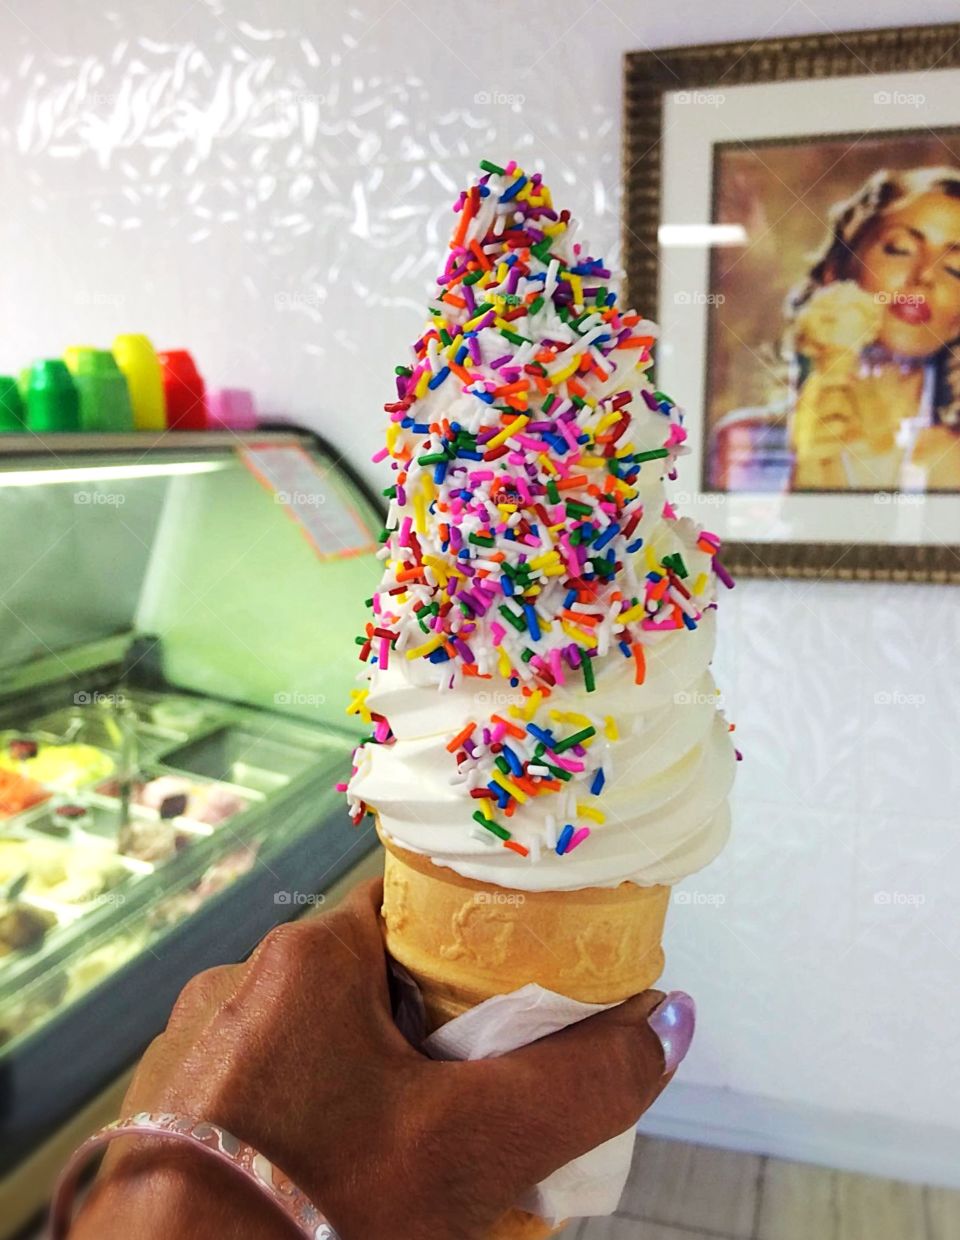 Vanilla ice cream cone